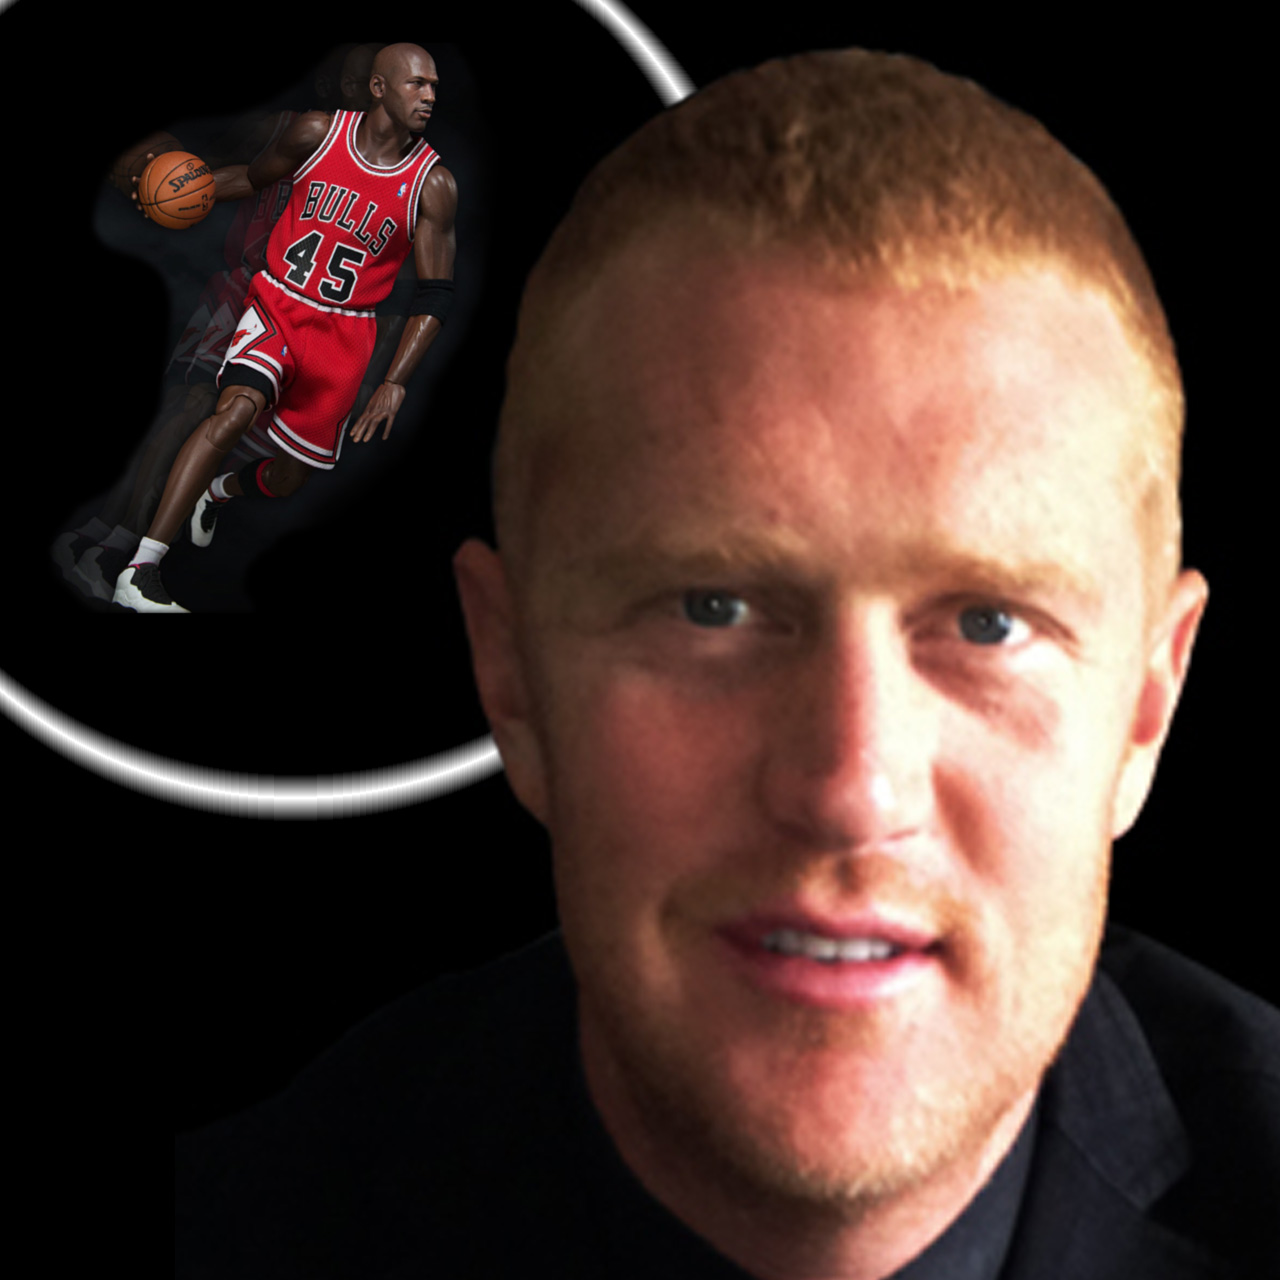 NBA G.O.A.T – Michael Jordan or Brian Scalabrine?